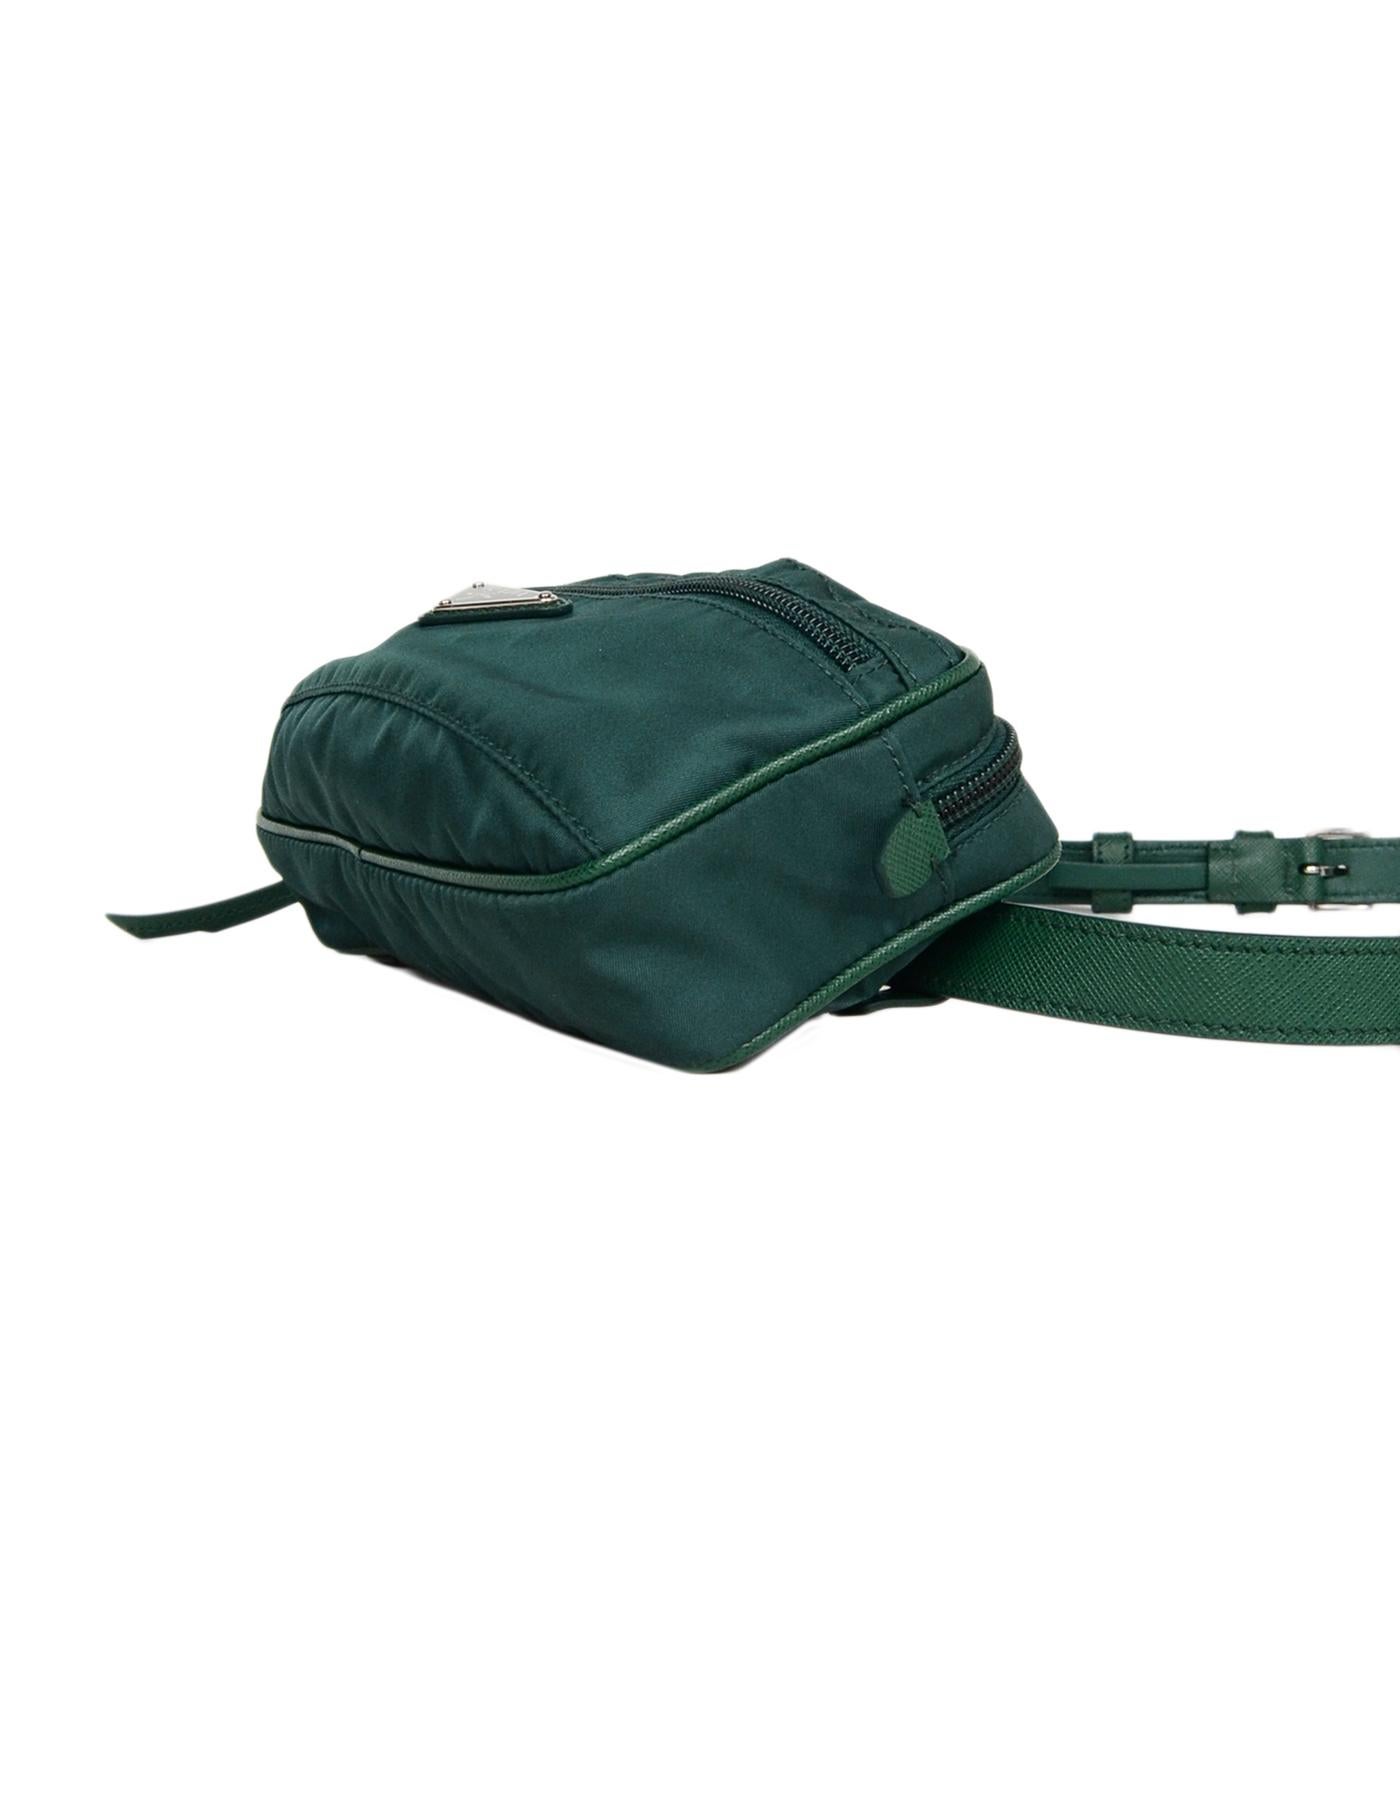 prada belt bag green